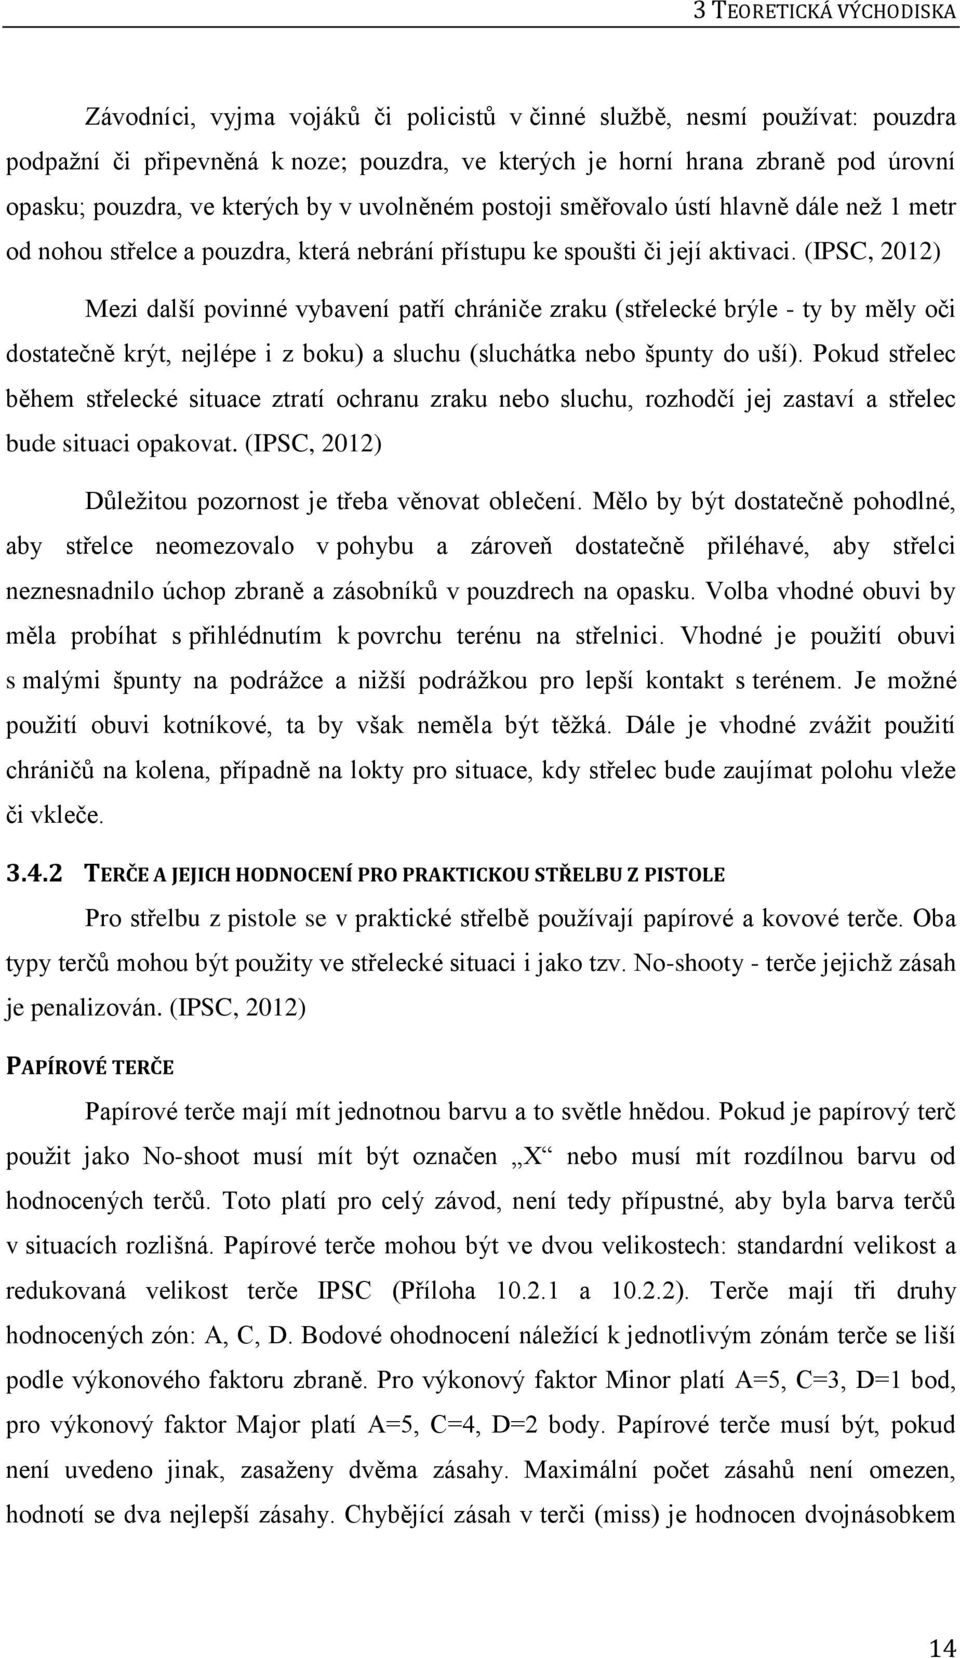 Západočeská univerzita v Plzni FAKULTA PEDAGOGICKÁ KATEDRA TĚLESNÉ A  SPORTOVNÍ VÝCHOVY - PDF Free Download